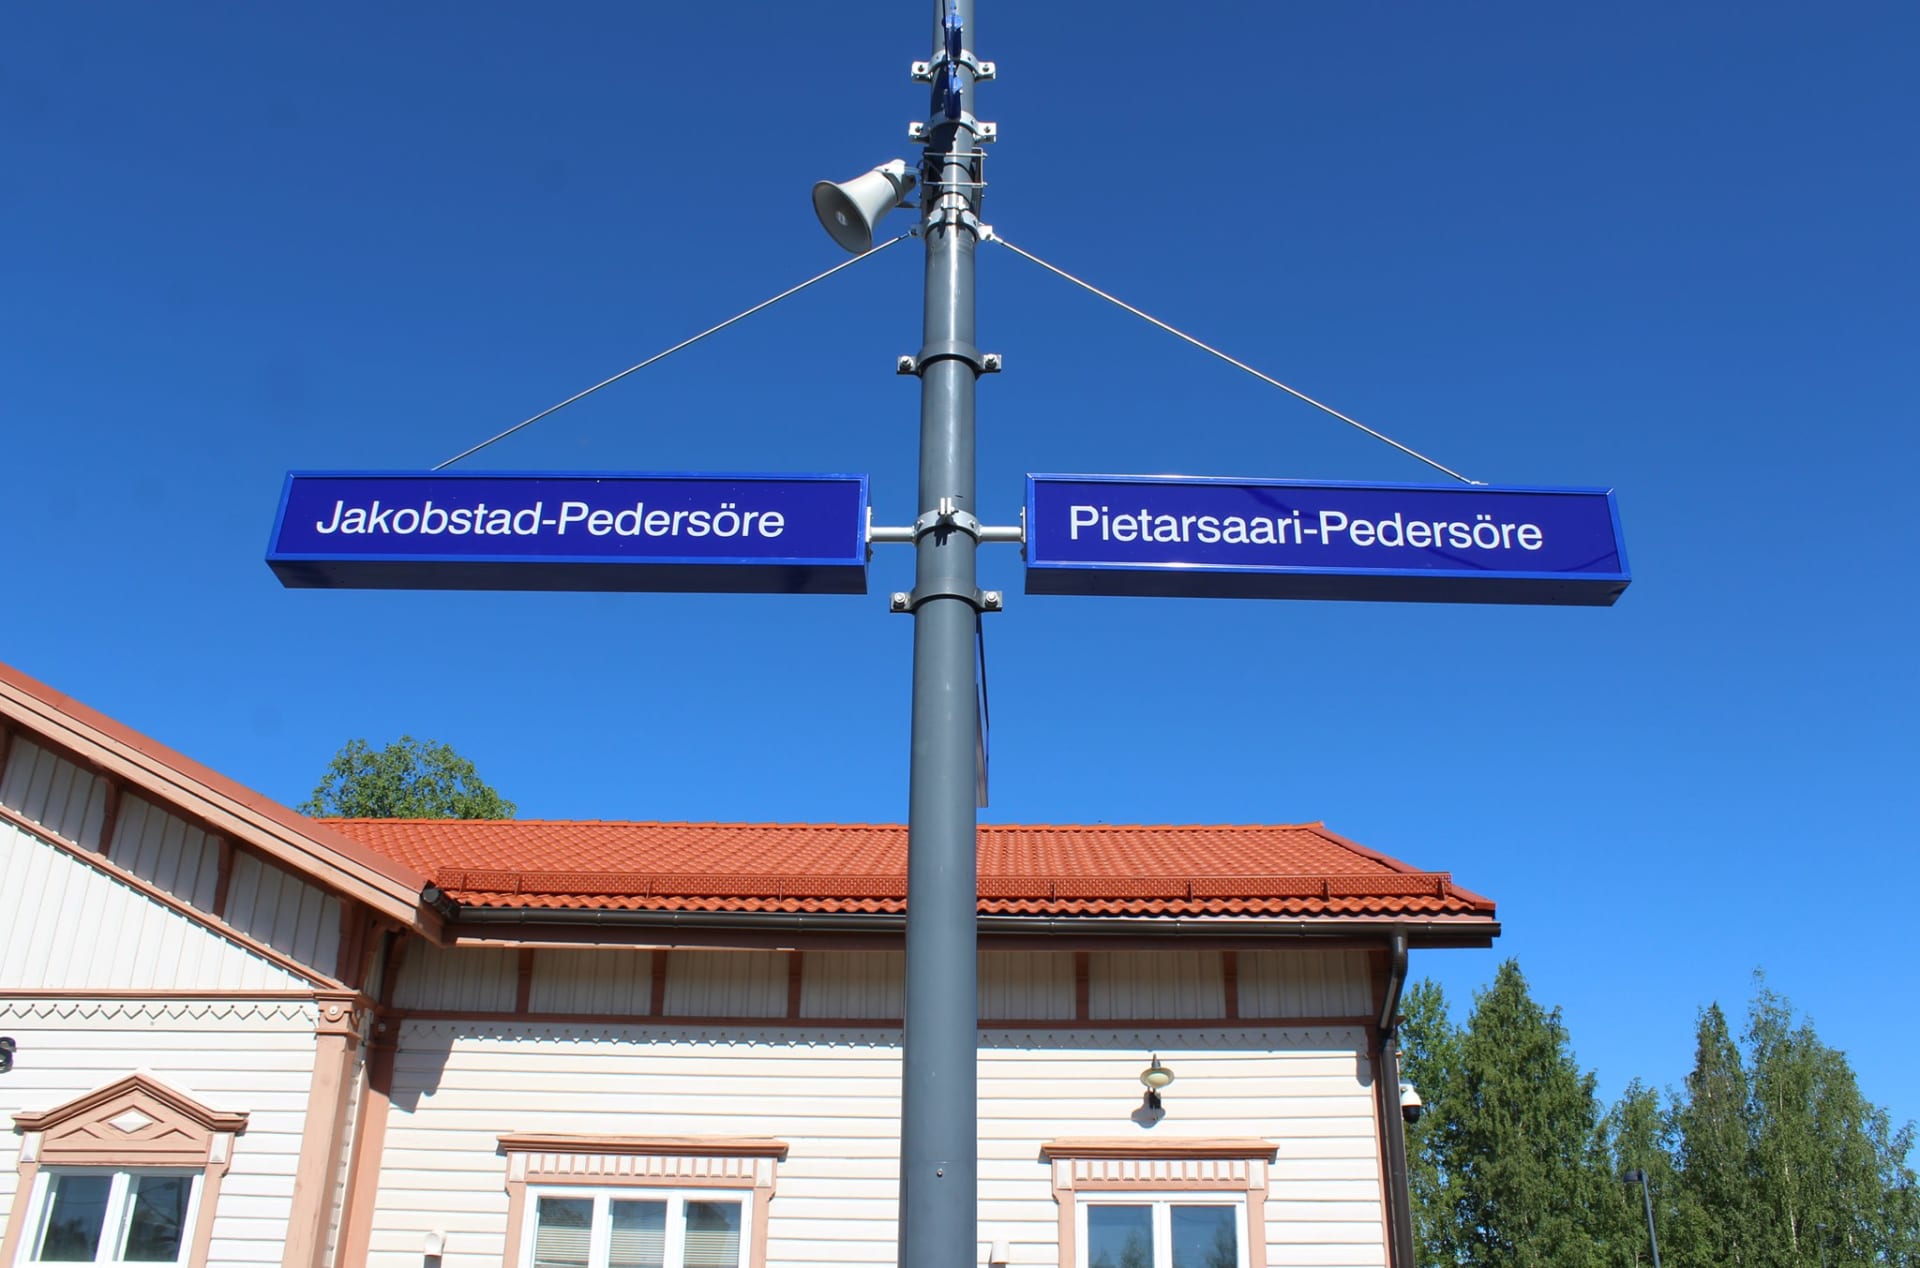 Pietarsaari-Pedersören rautatieasema